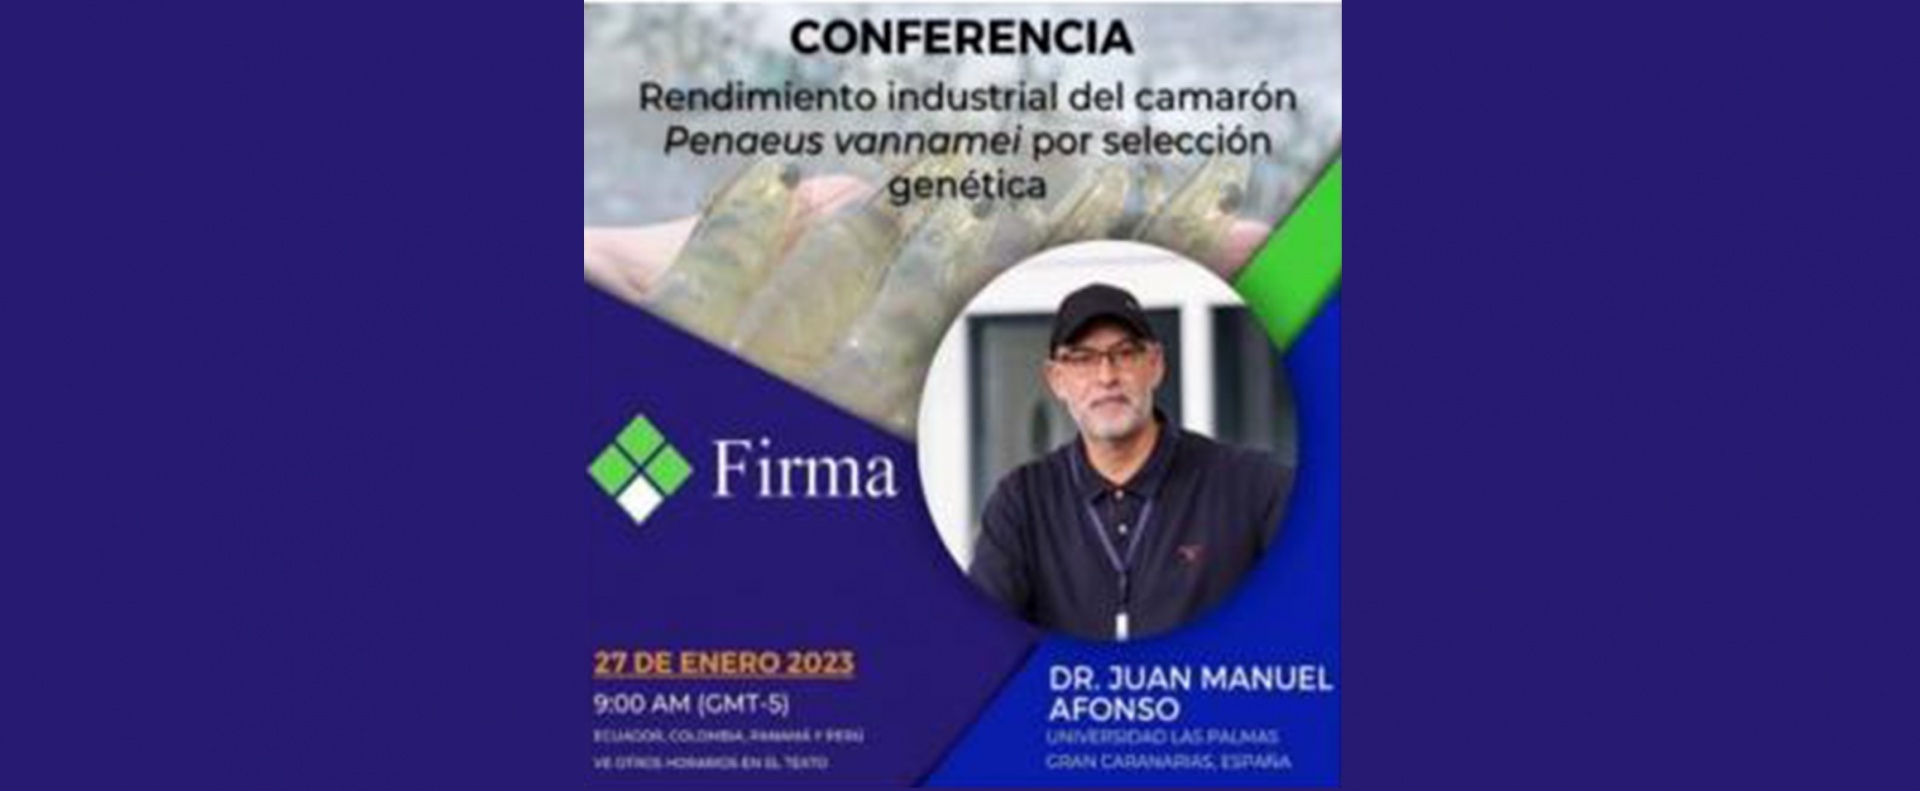 Conferencia: “Rendimiento industrial del camarón Penaeus vannamei por selección genética”, impartida por el Dr. Juan Manuel Afonso